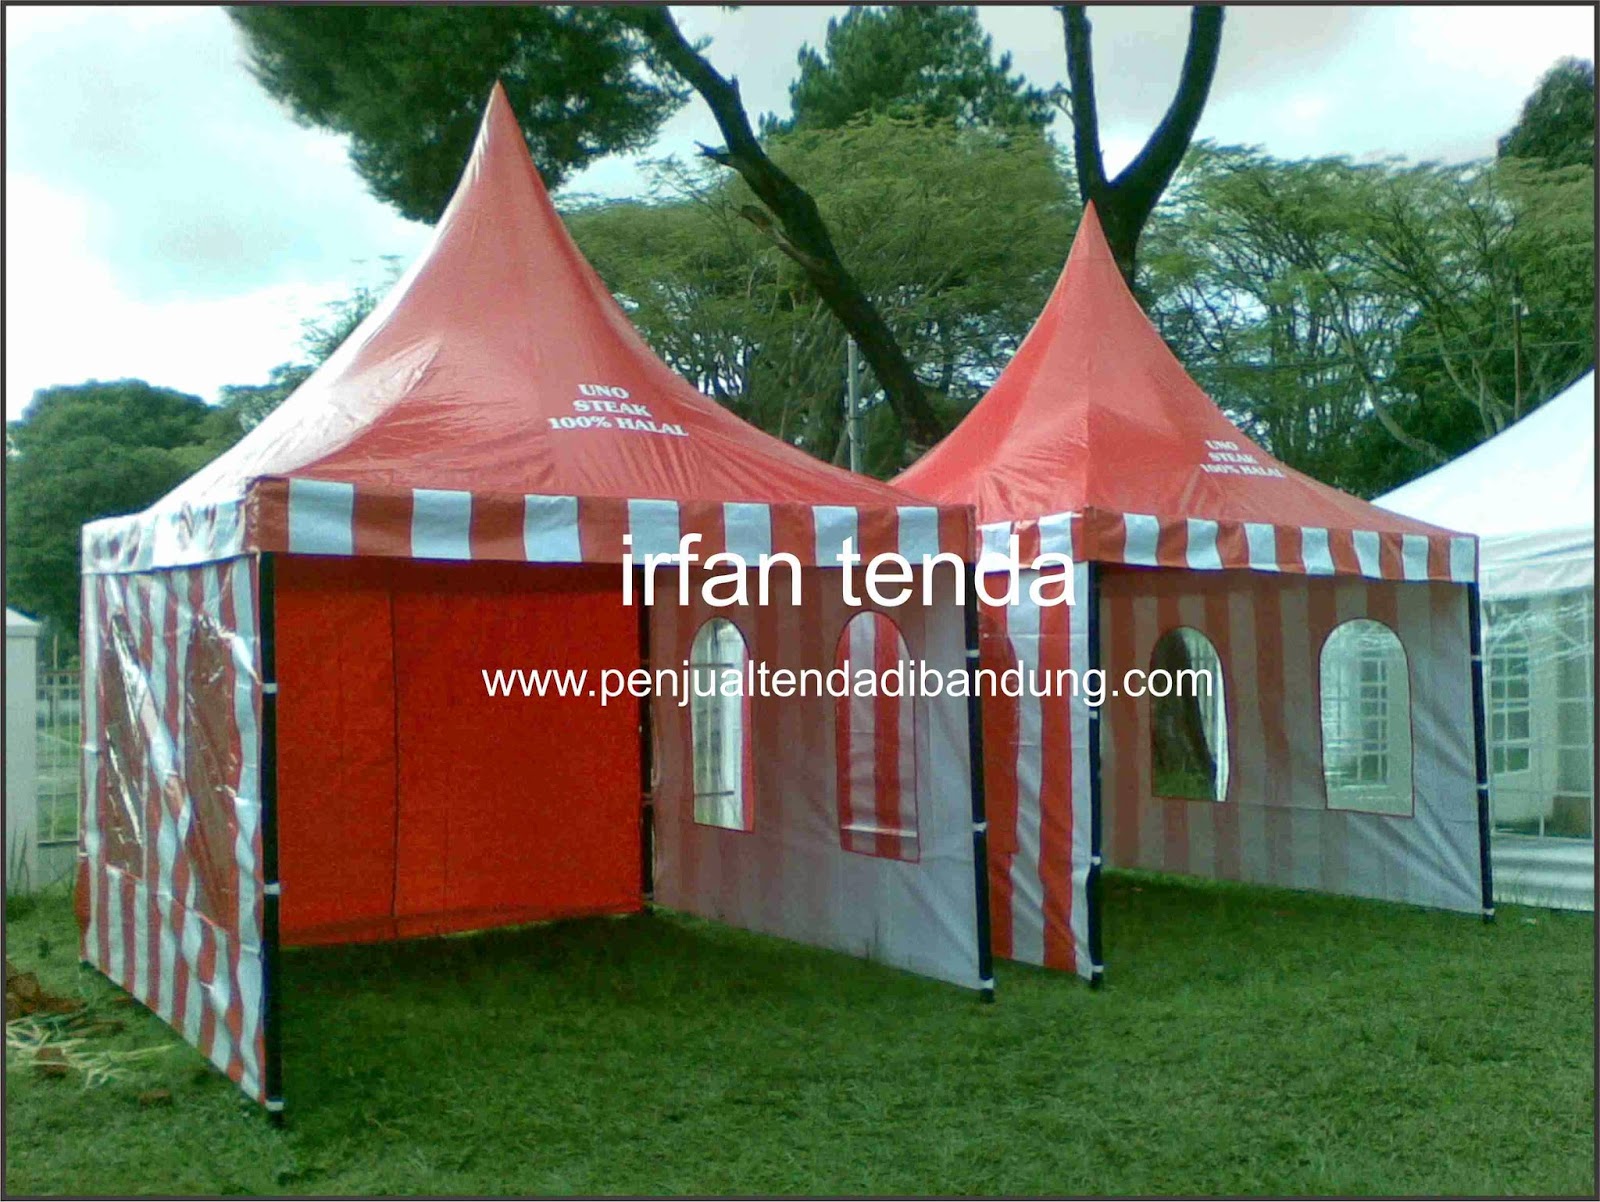 Penjual tenda di bandung, distributor tenda, menjual tenda event, menyediakan tenda event, menjual tenda dengan harga murah.